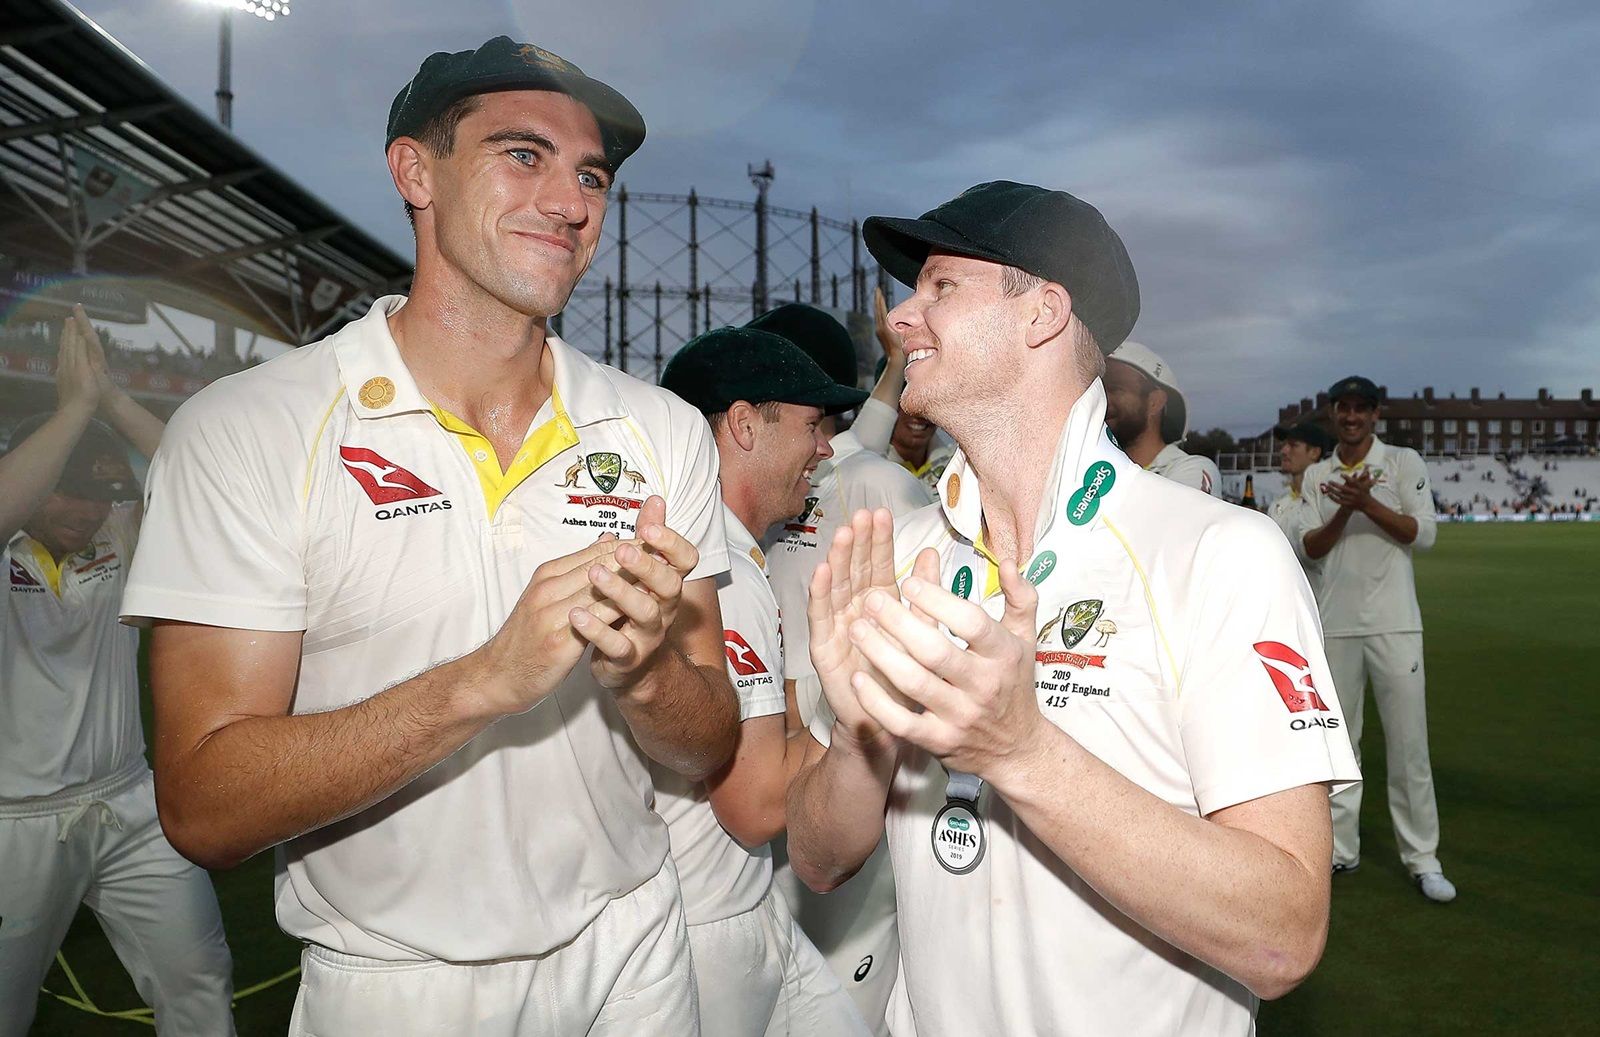 AUS v ENG: एडिलेड टेस्ट से बाहर हुए पैट कमिंस, एक बार फिर ऑस्ट्रेलिया के कप्तान बने स्टीव स्मिथ